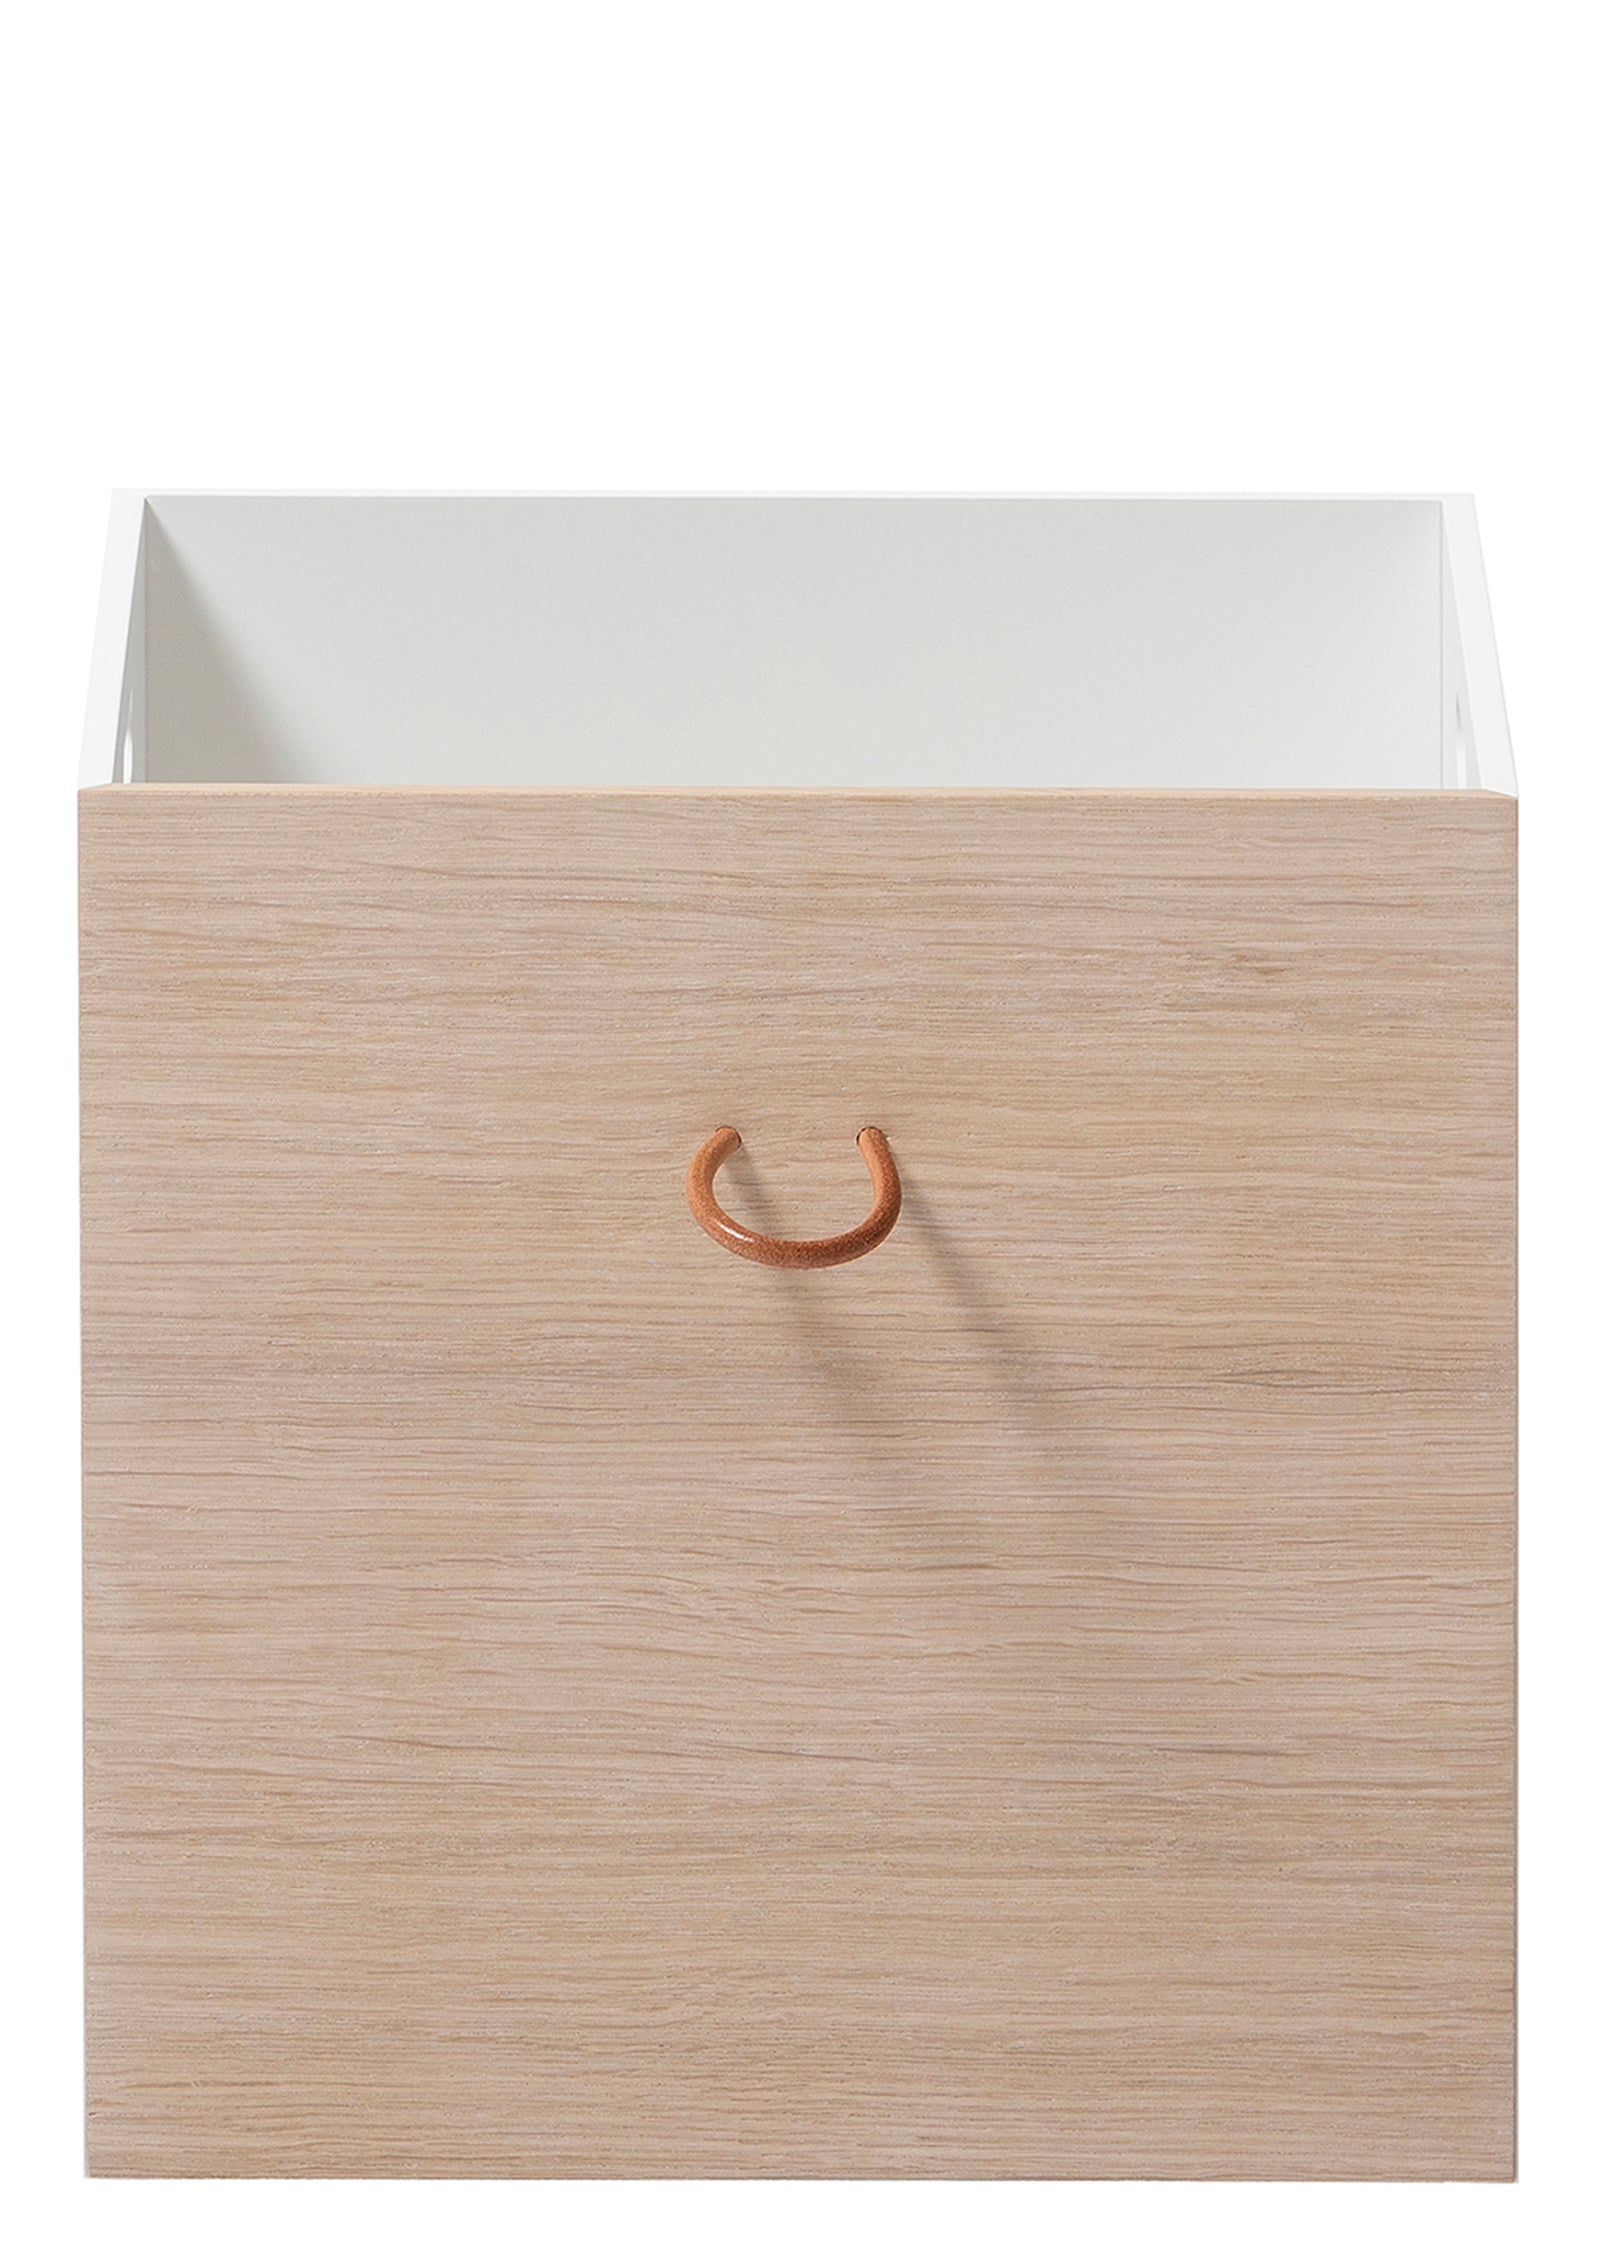 Oliver Furniture 'Wood' Kisten Weiß/Eiche